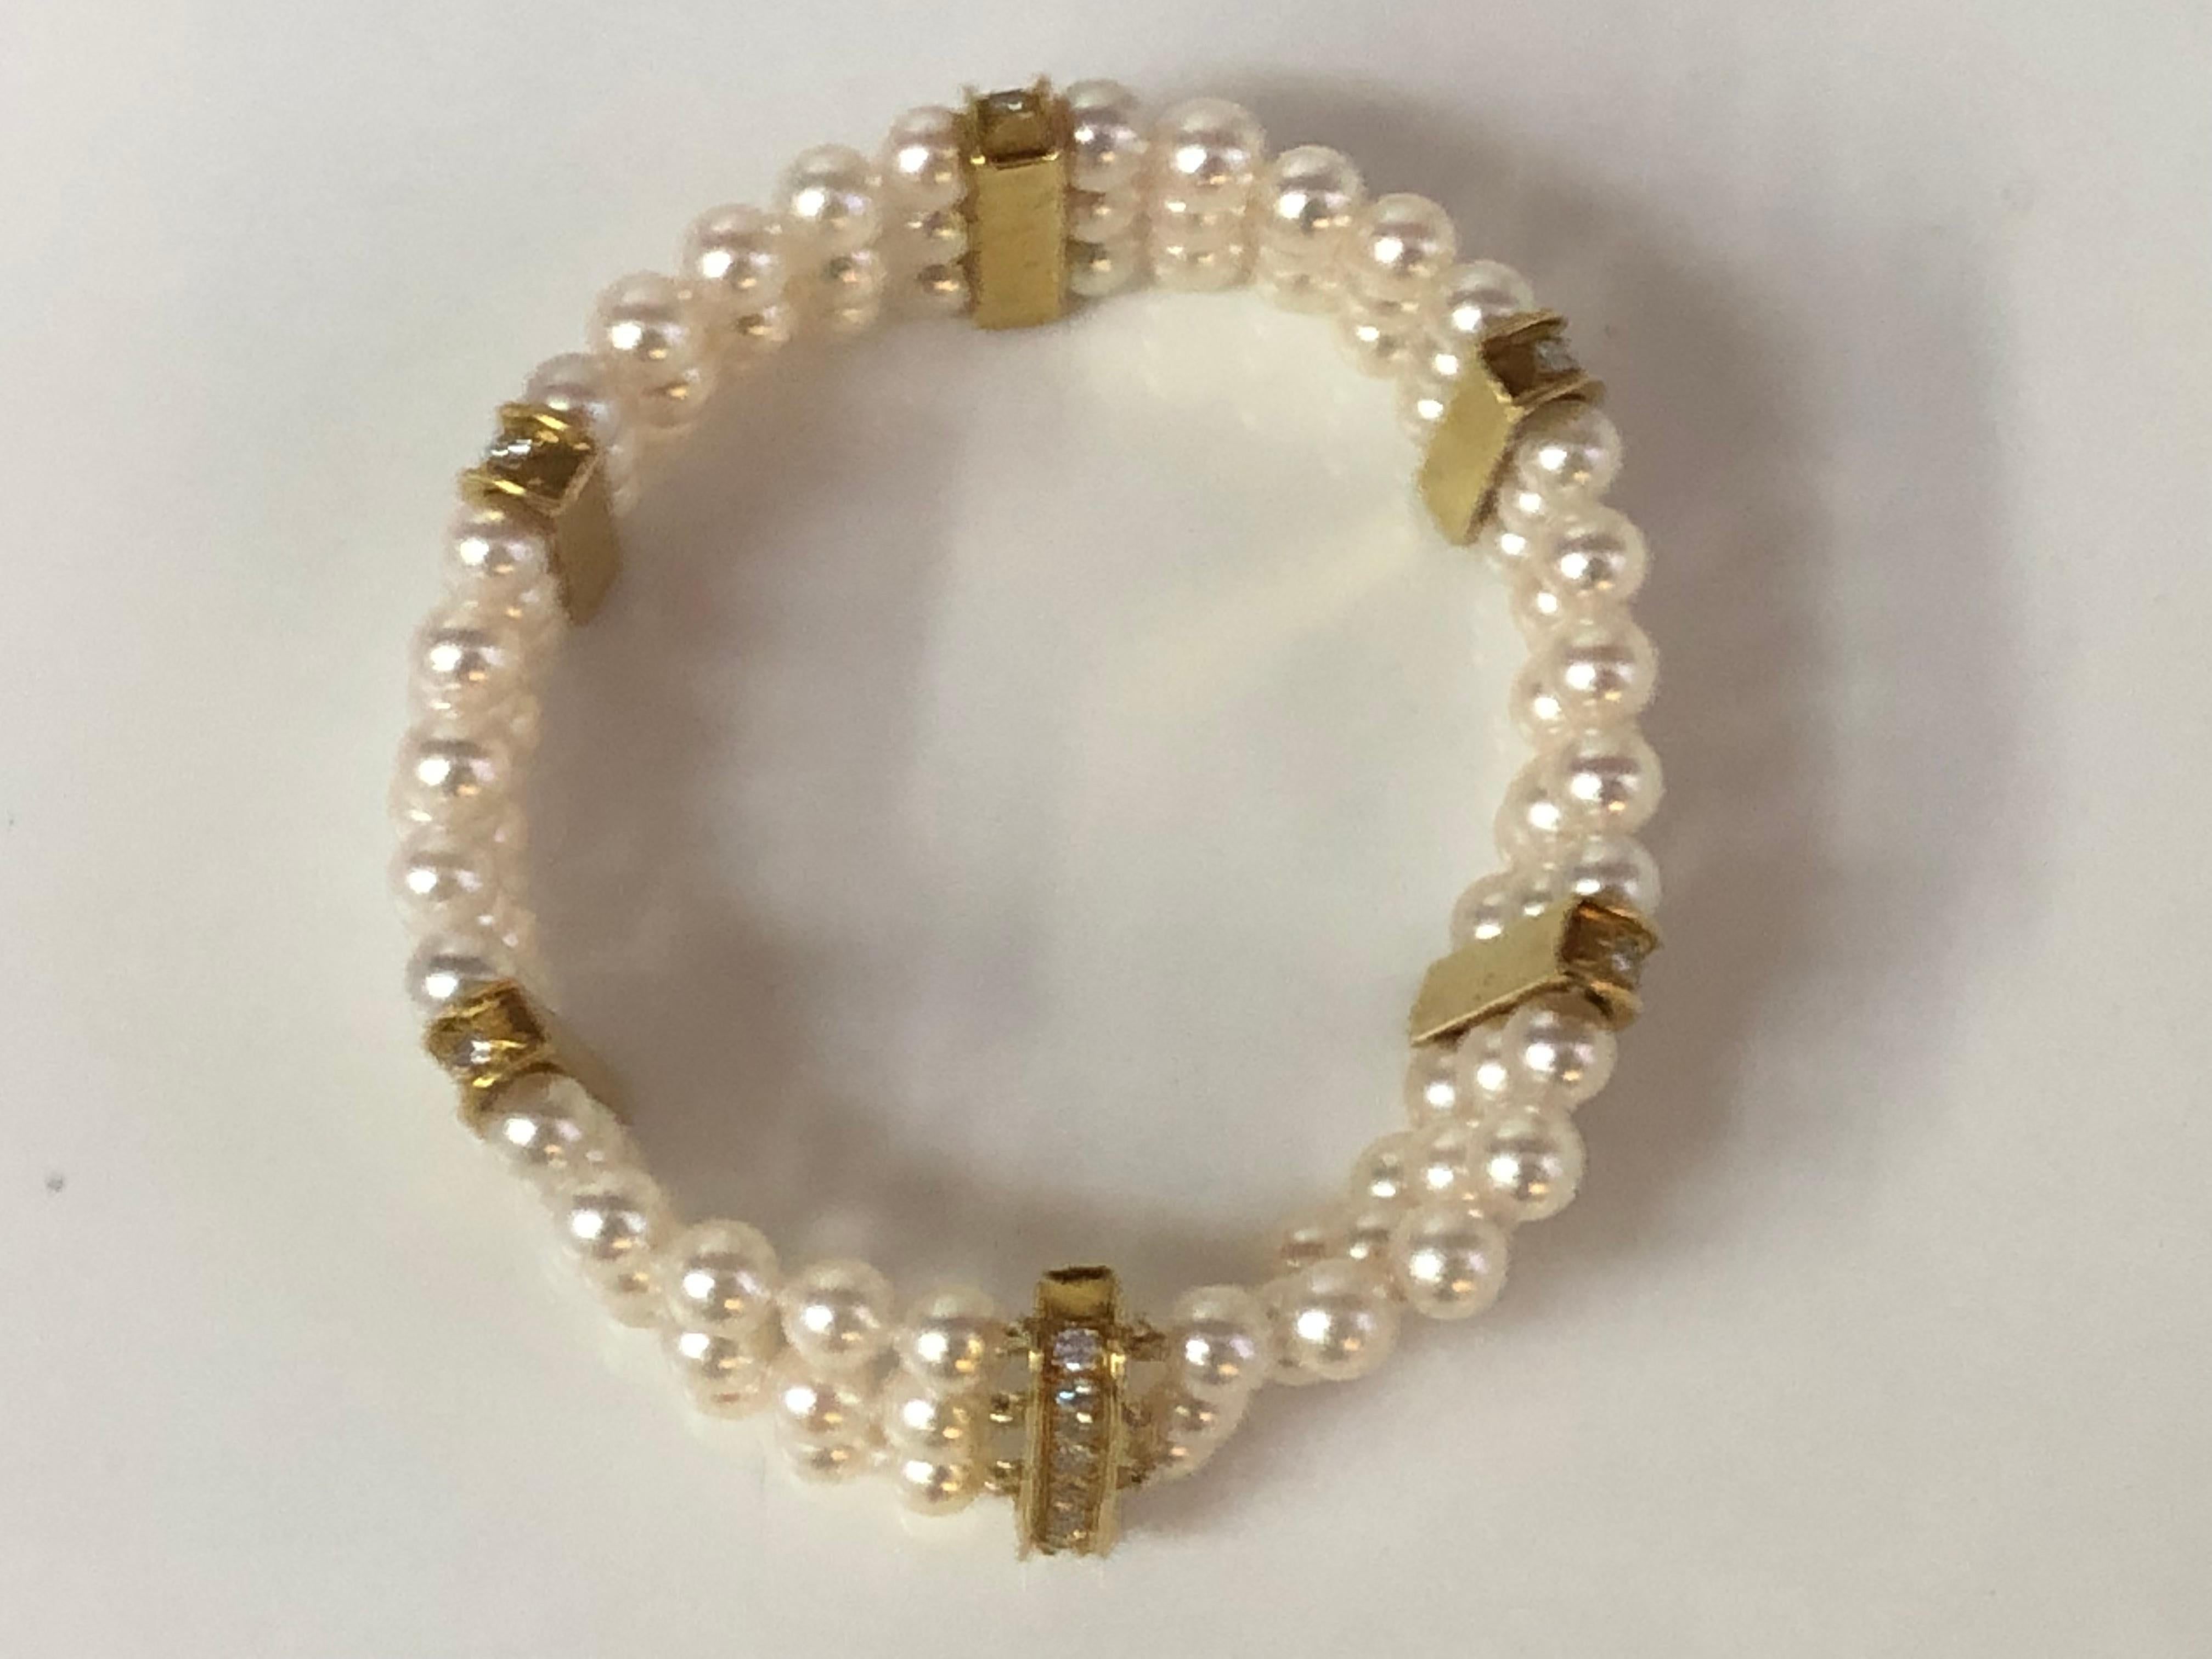 Ce superbe bracelet de perles à trois brins avec six stations de diamants est magnifiquement classique.
Fermoir en or jaune 18 carats et stations de diamants.
6 stations de diamants d'environ 18,5 mm x 4,2 mm au total, l'une d'entre elles est un